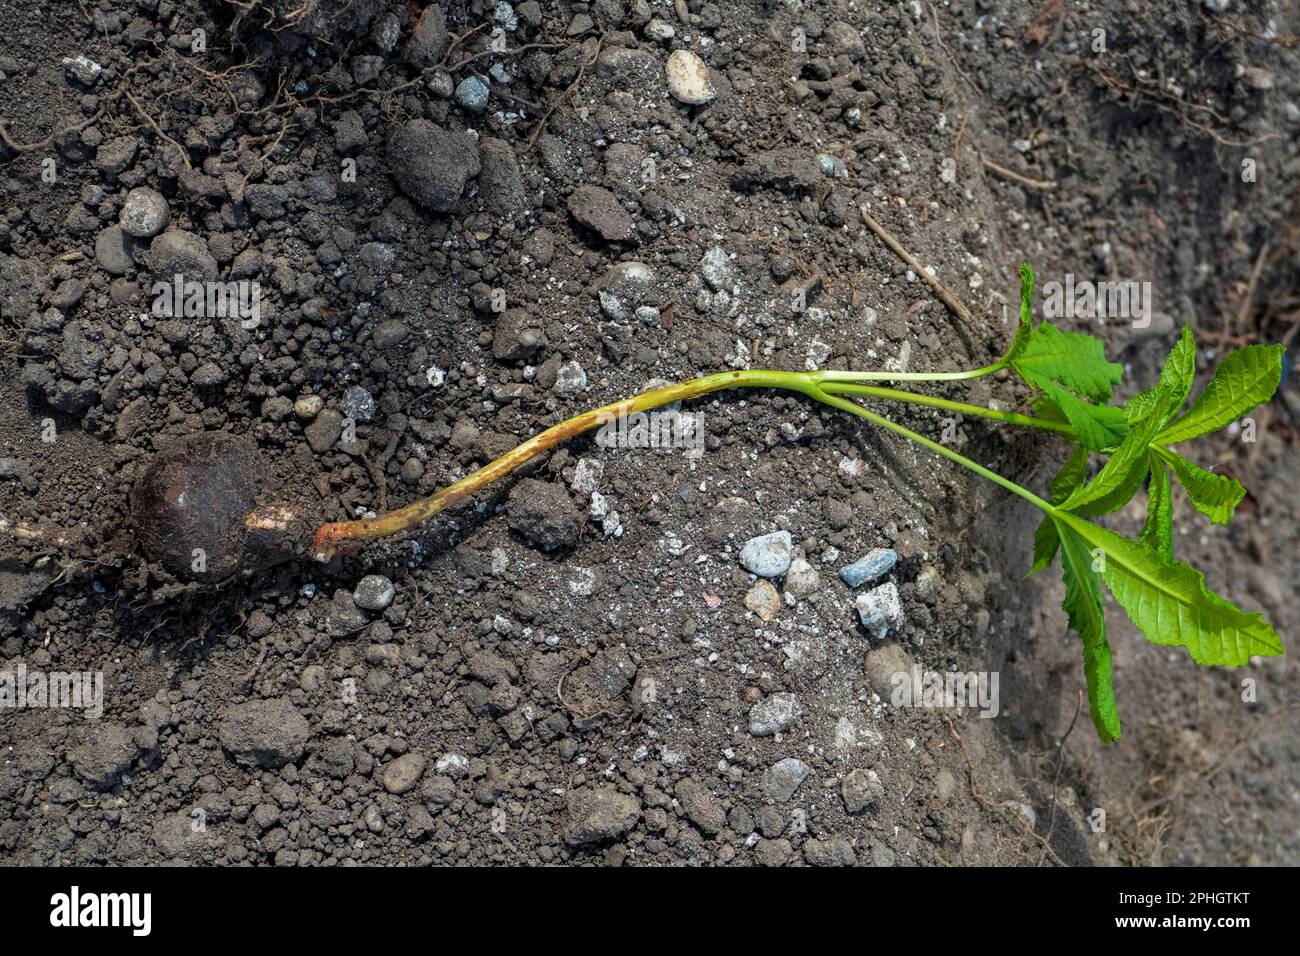 Junge Rosskastanie Kastaniepflanze mit Samen liegt auf der Erde Stock Photo